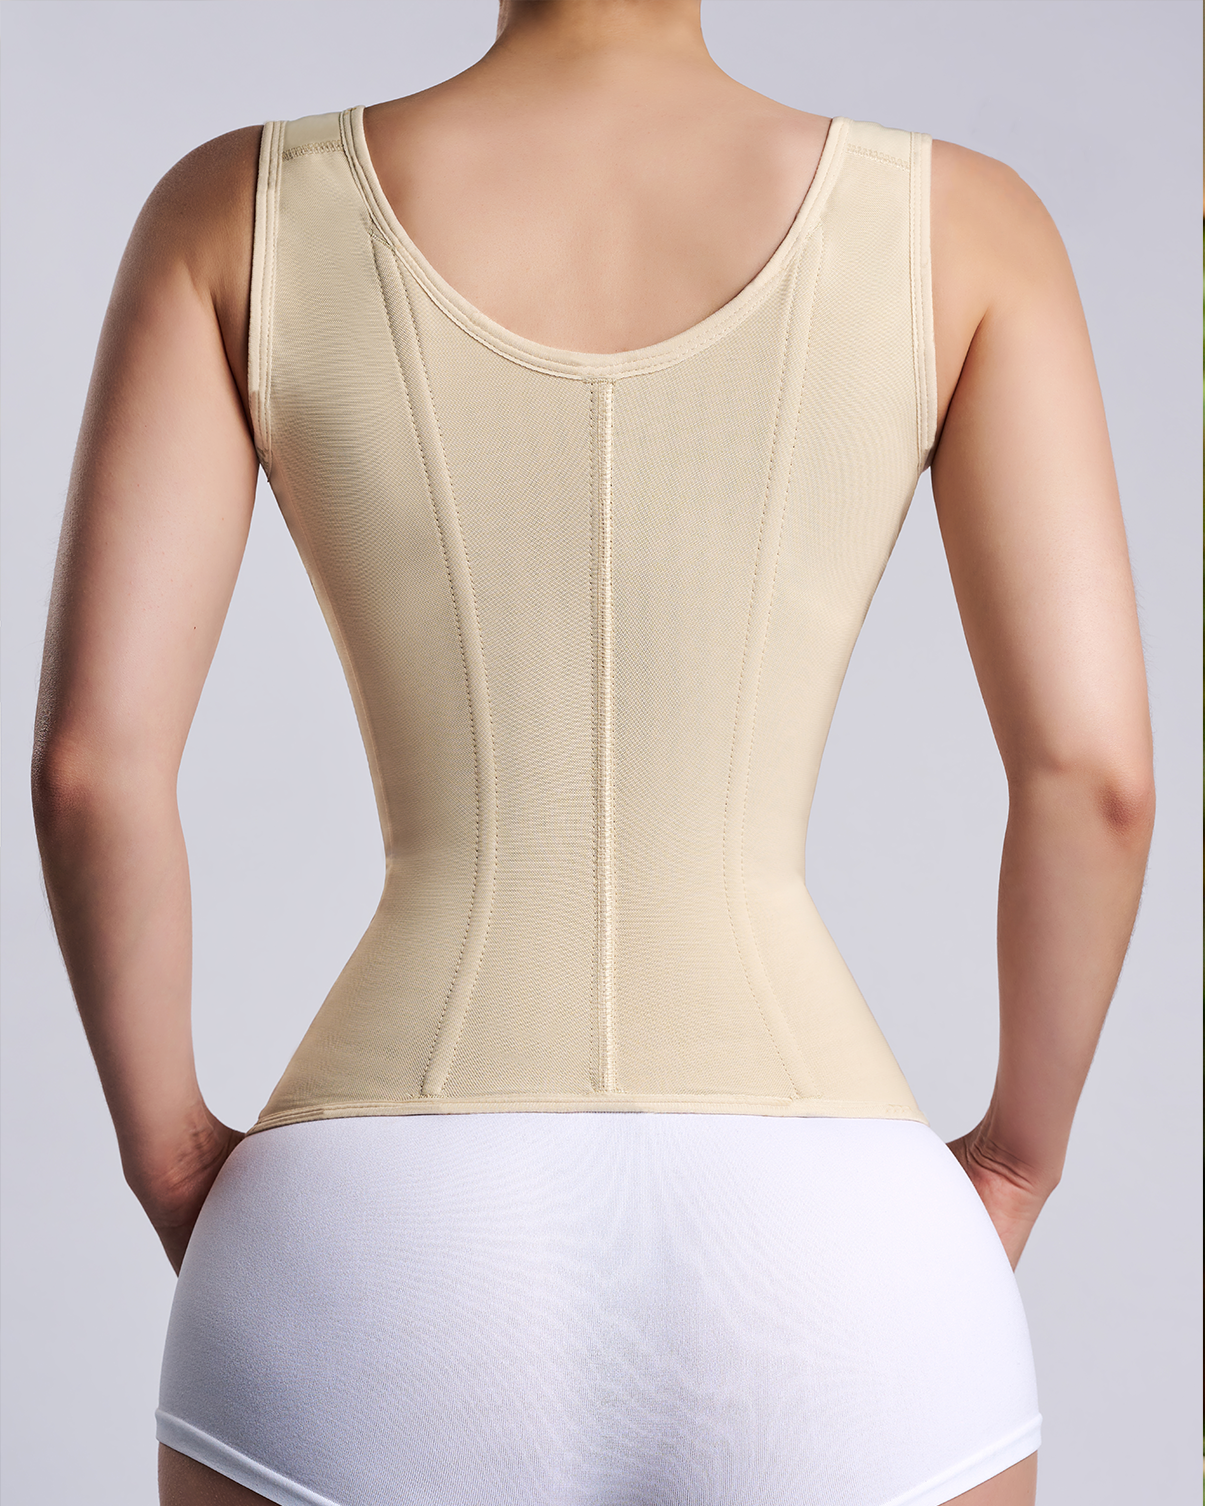 Women waist trainer corset hourglass vest